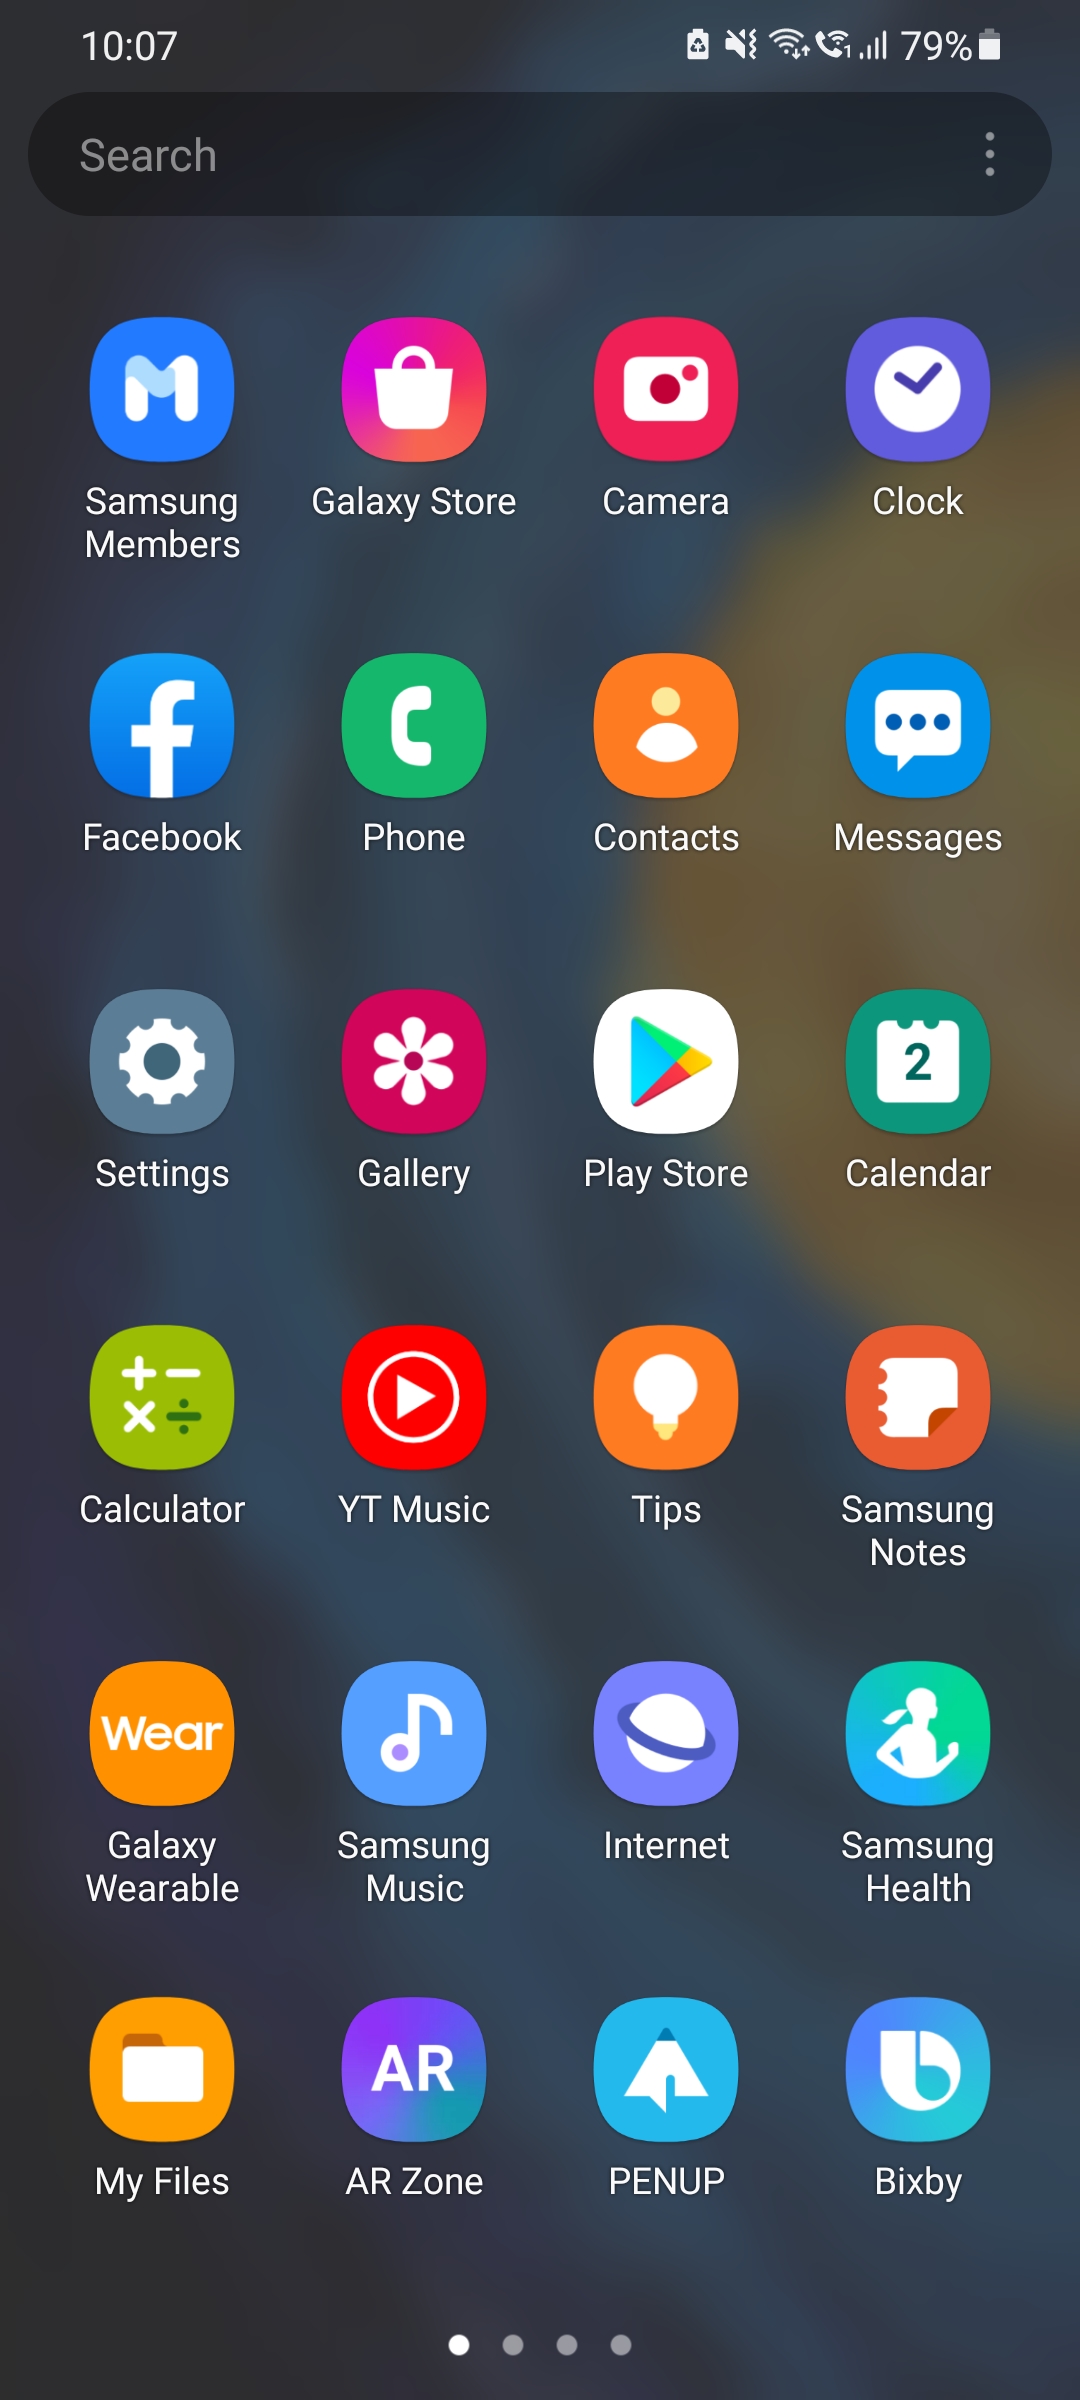 Tùy chỉnh nền ứng dụng trên điện thoại của bạn với app drawer background mới. Với nhiều màu sắc và chủ đề khác nhau, bạn có thể tạo ra một giao diện điện thoại độc đáo, phù hợp với phong cách của mình. Thưởng thức giao diện mới mỗi ngày với app drawer background!